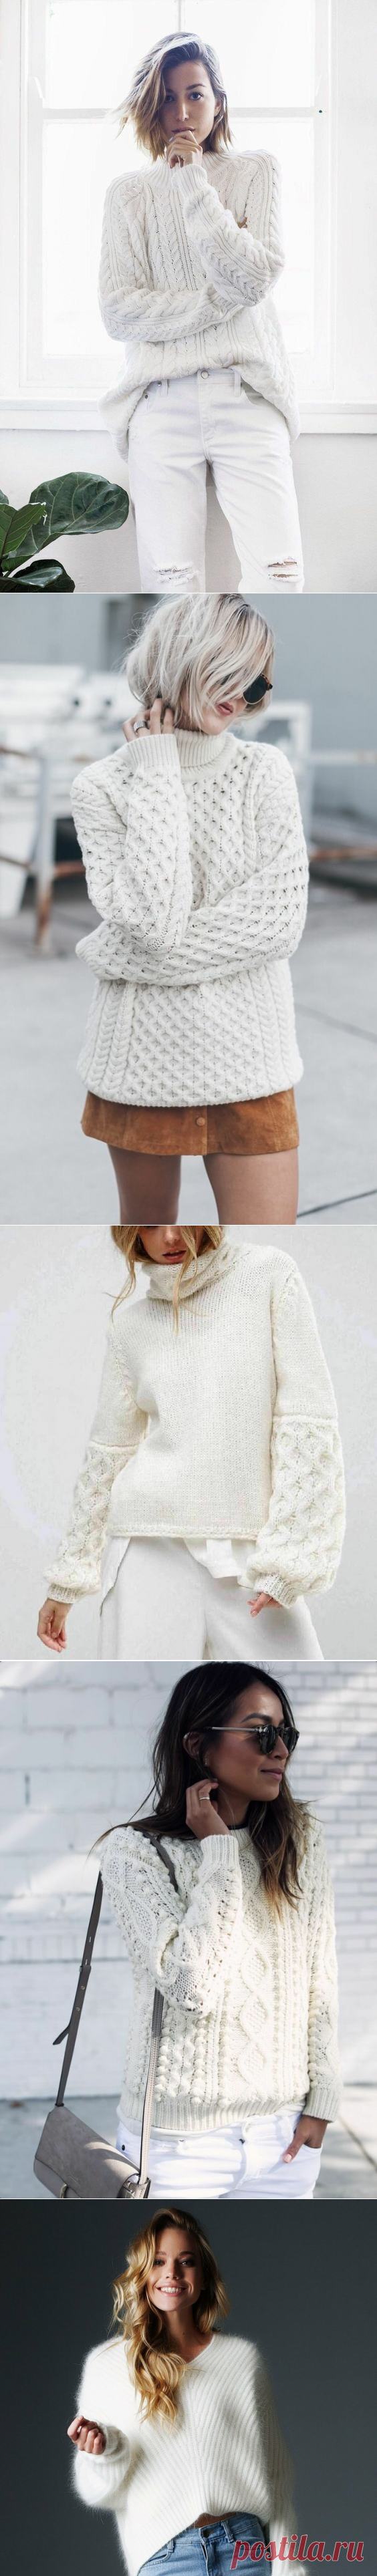 20 идей белых свитеров, которые стоит связать к зиме. | Вязалкина | Яндекс Дзен